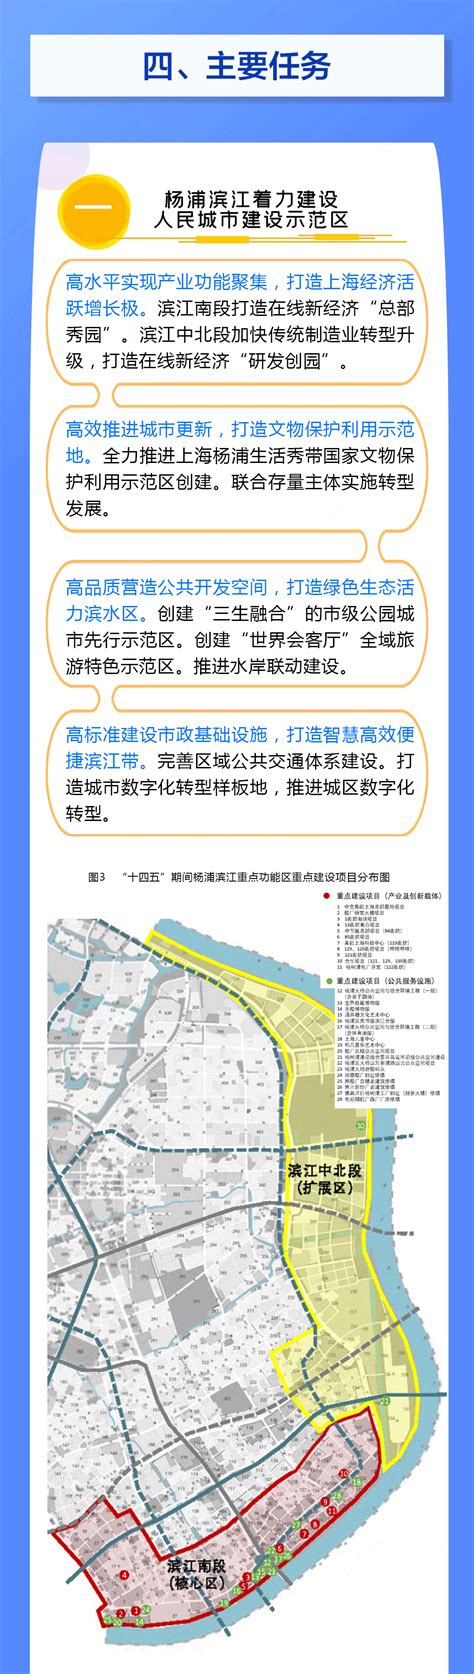 【重点聚焦】40年间 杨浦规划有过这些变化 未来还将这样发展_上海杨浦